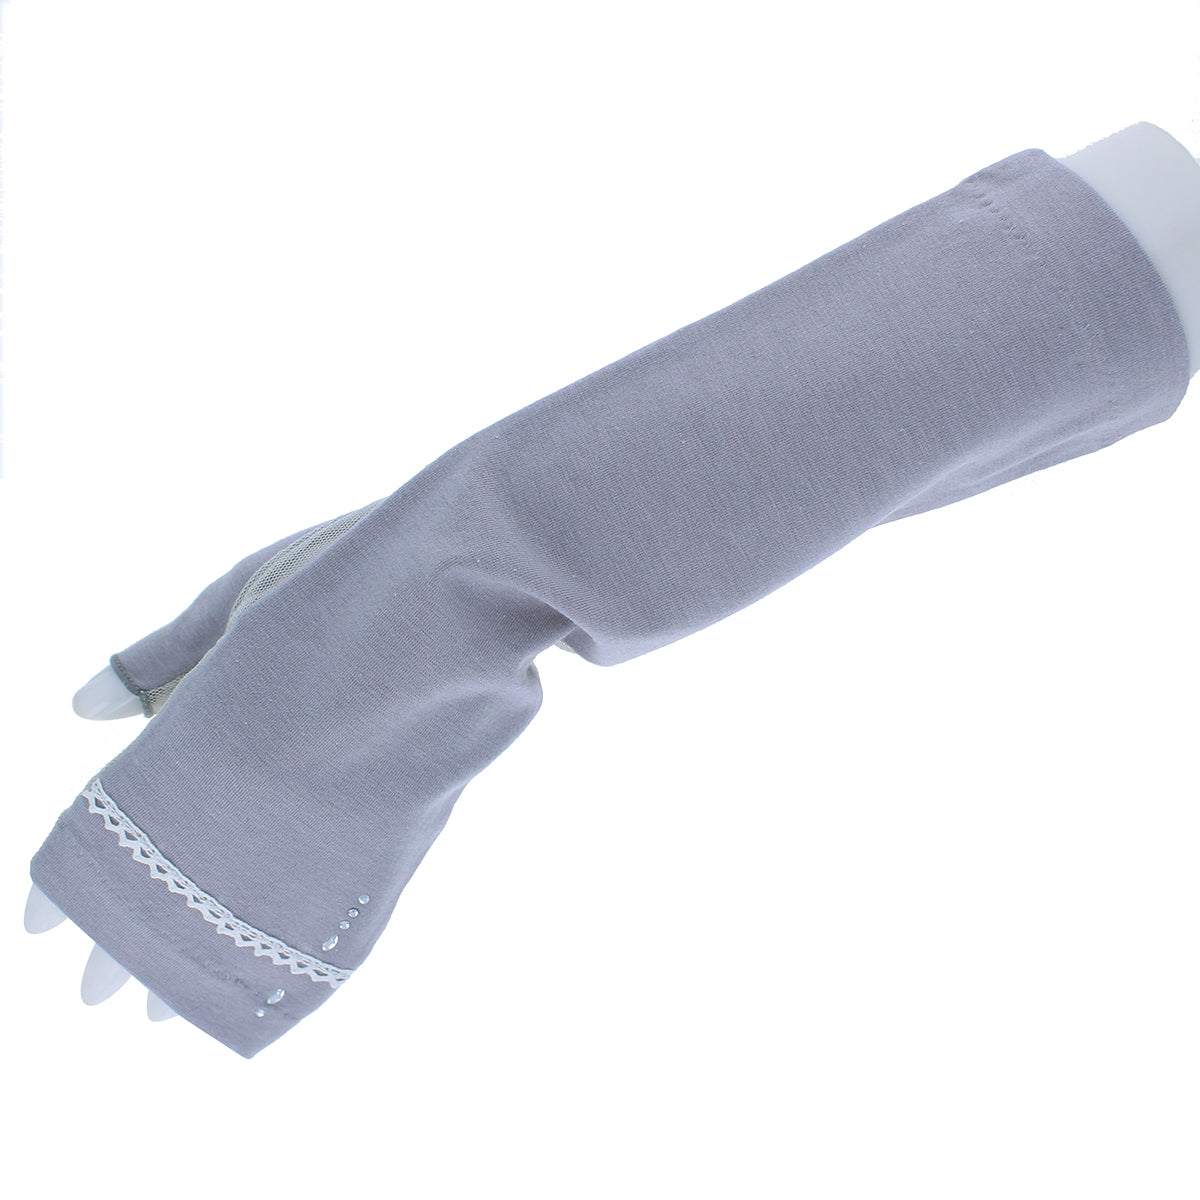 高遮蔽UPF50+婦人UV手袋 ミドル丈 グレー